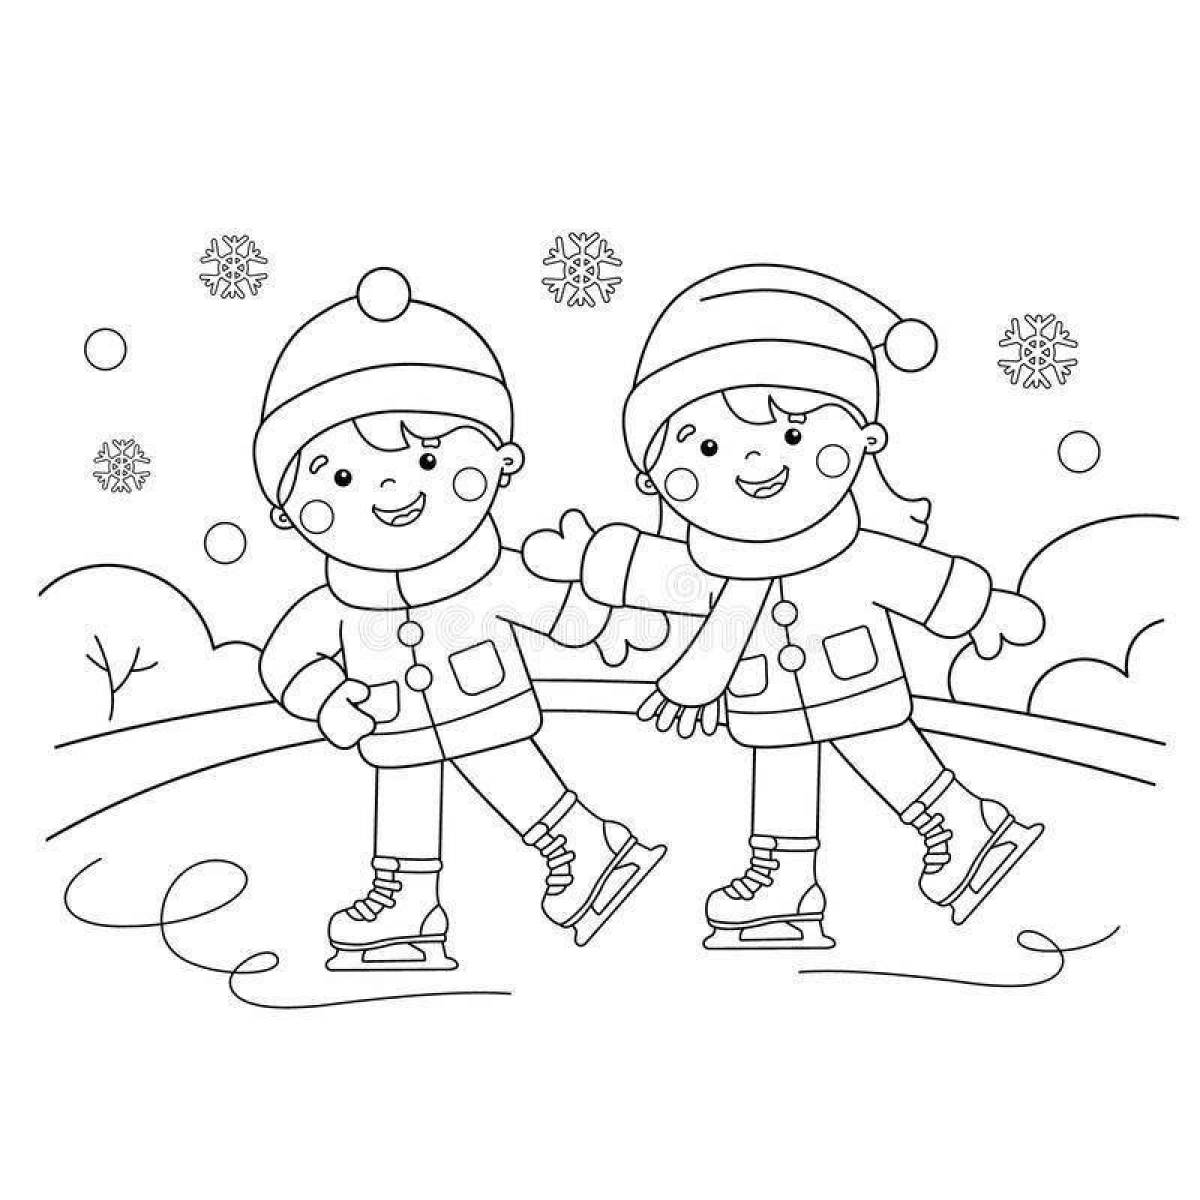 Exquisite picture of winter sports for children in kindergarten